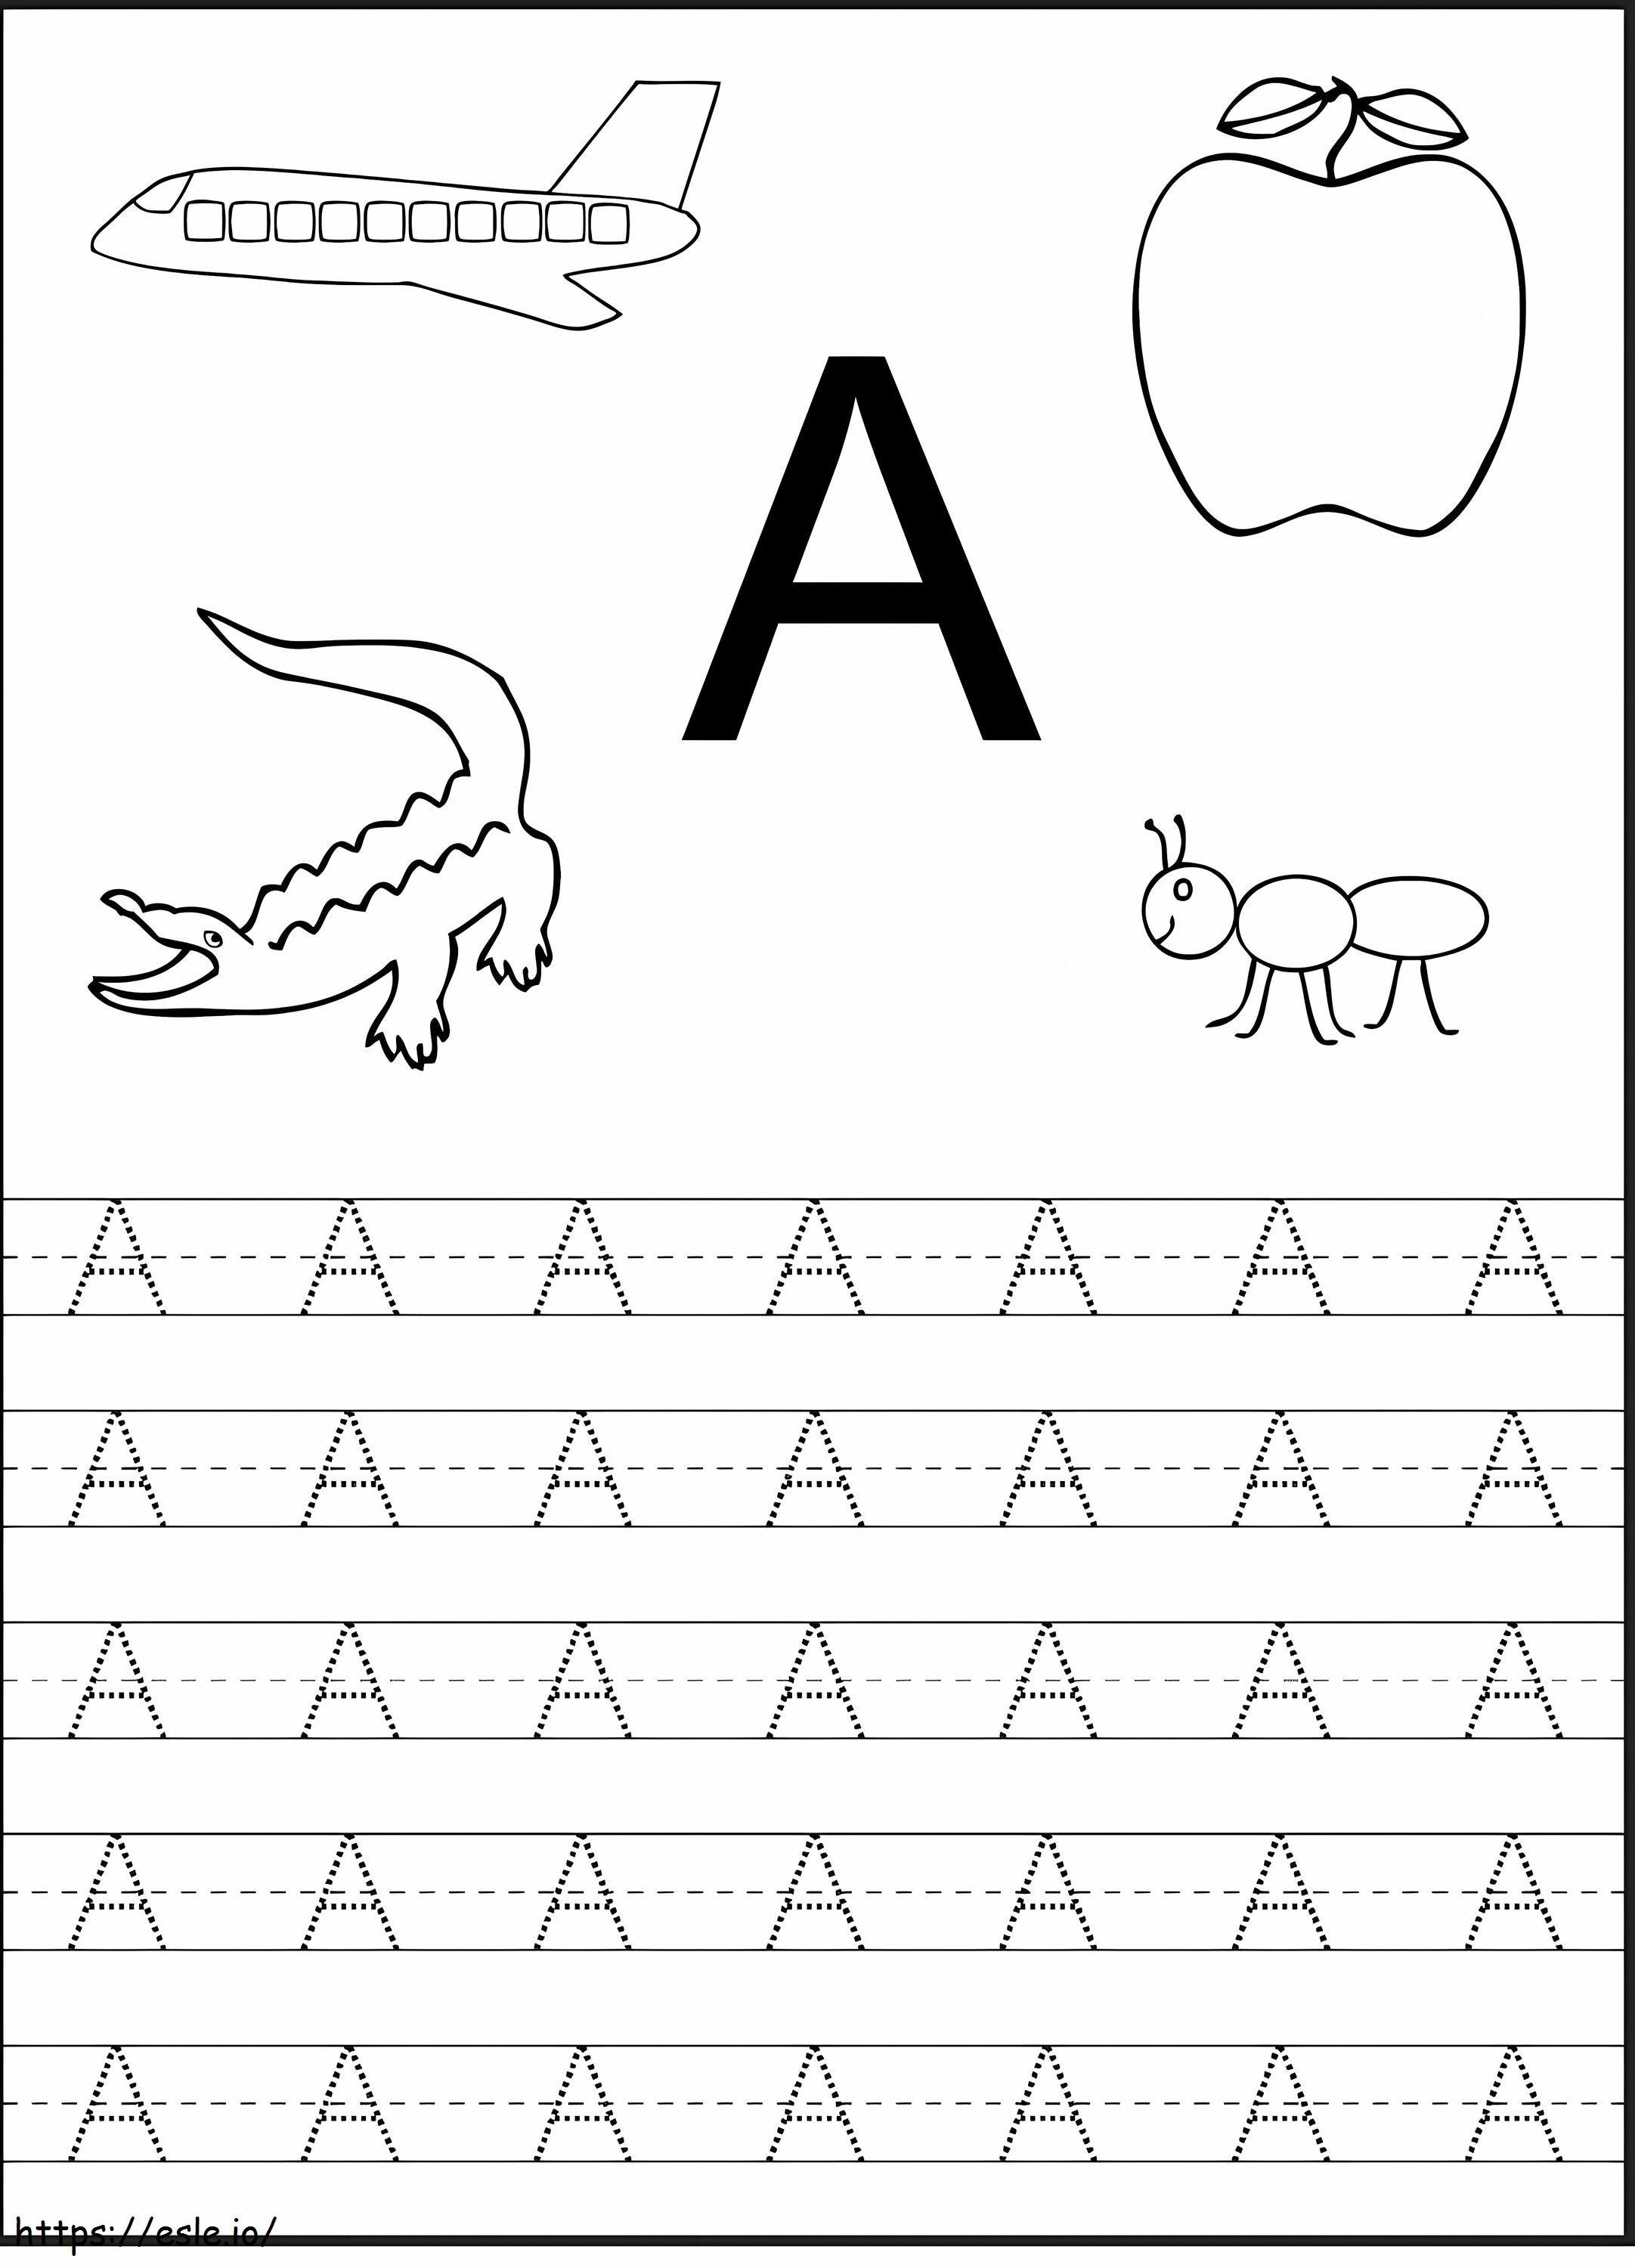  Przedszkolny arkusz roboczy alfabet do edukacji 1 kolorowanka